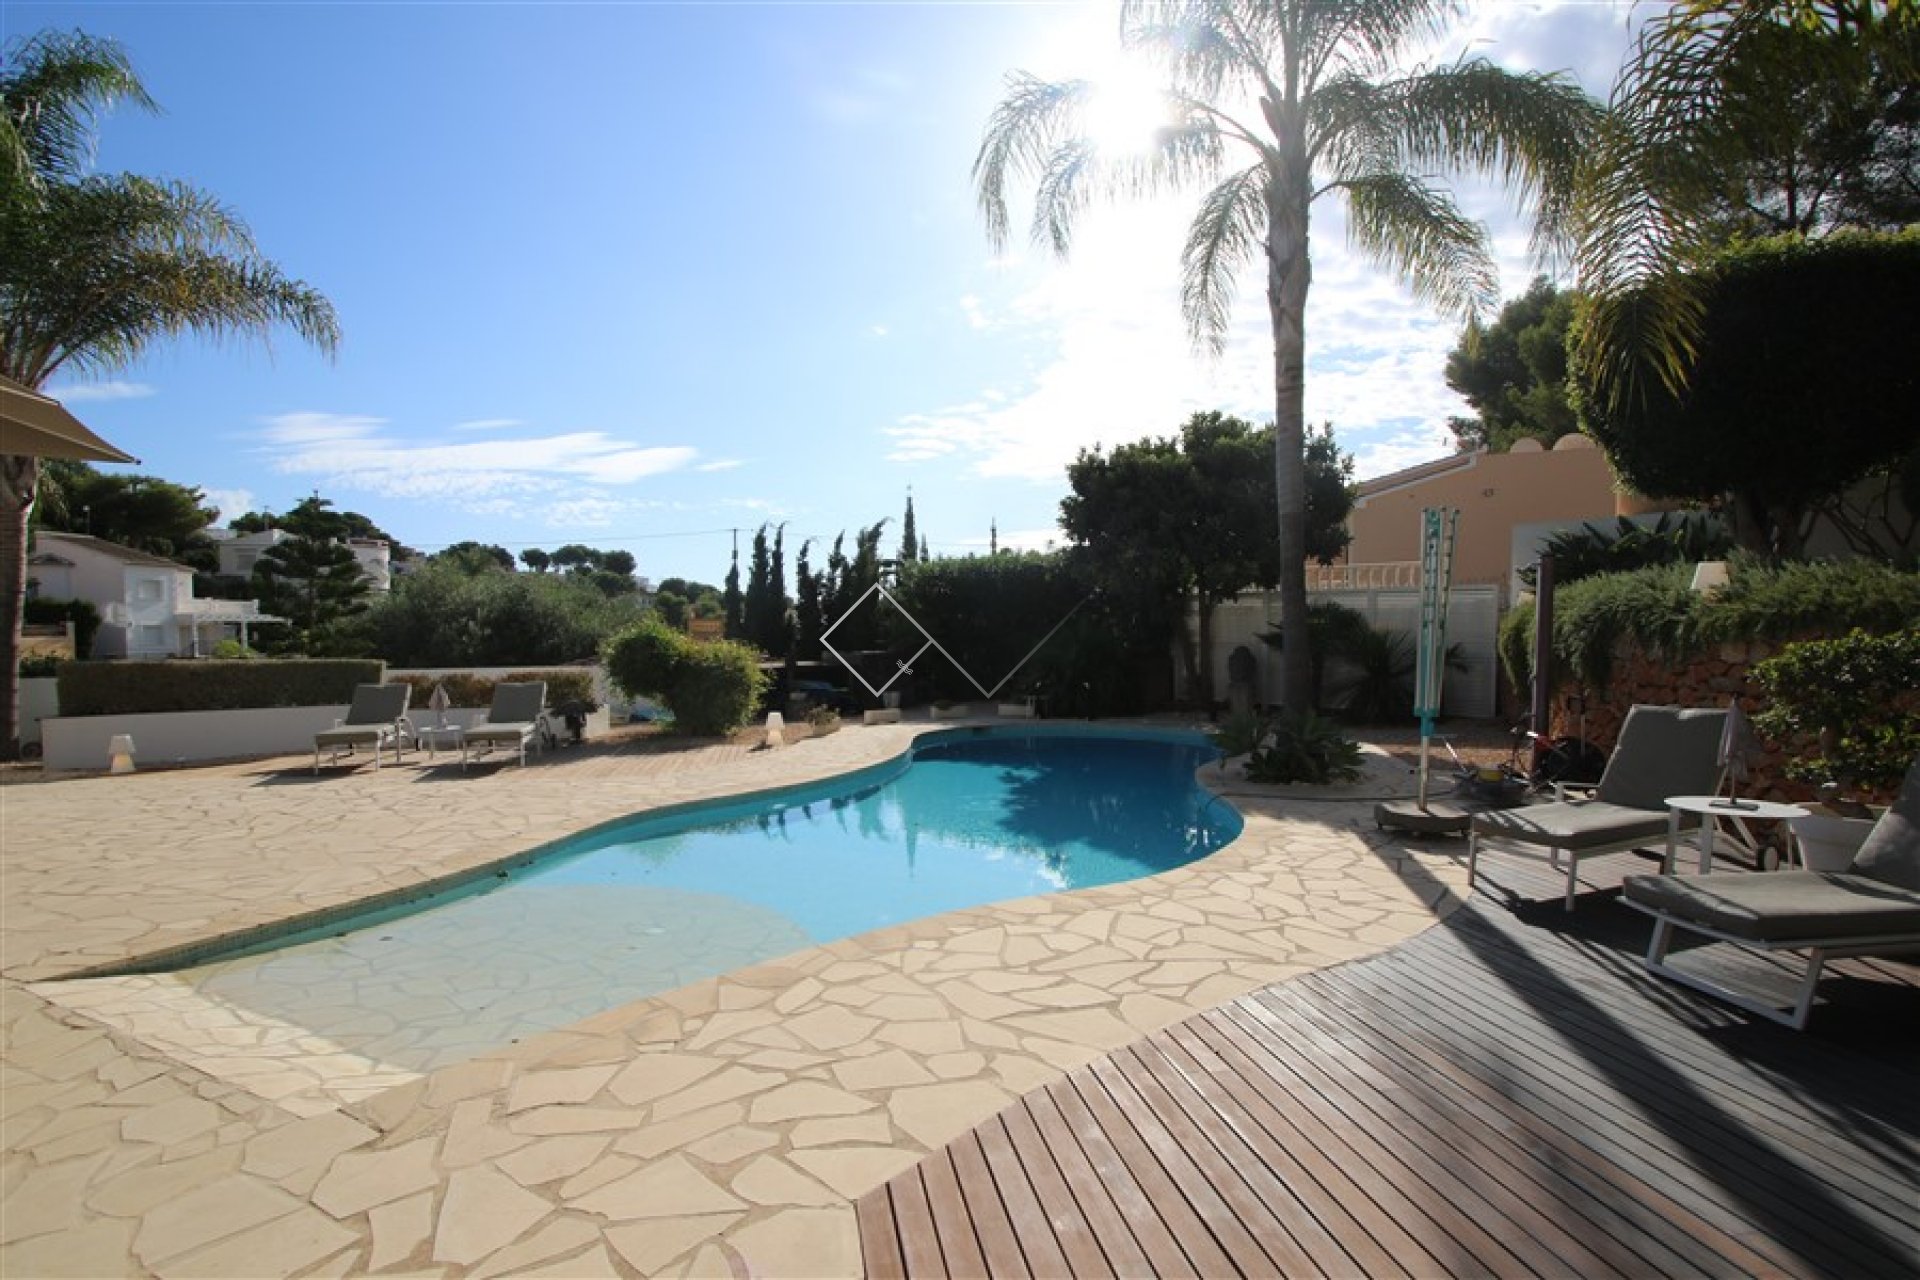 zwembad en terras - Ibiza villa te koop in Benissa met verwarmd zwembad